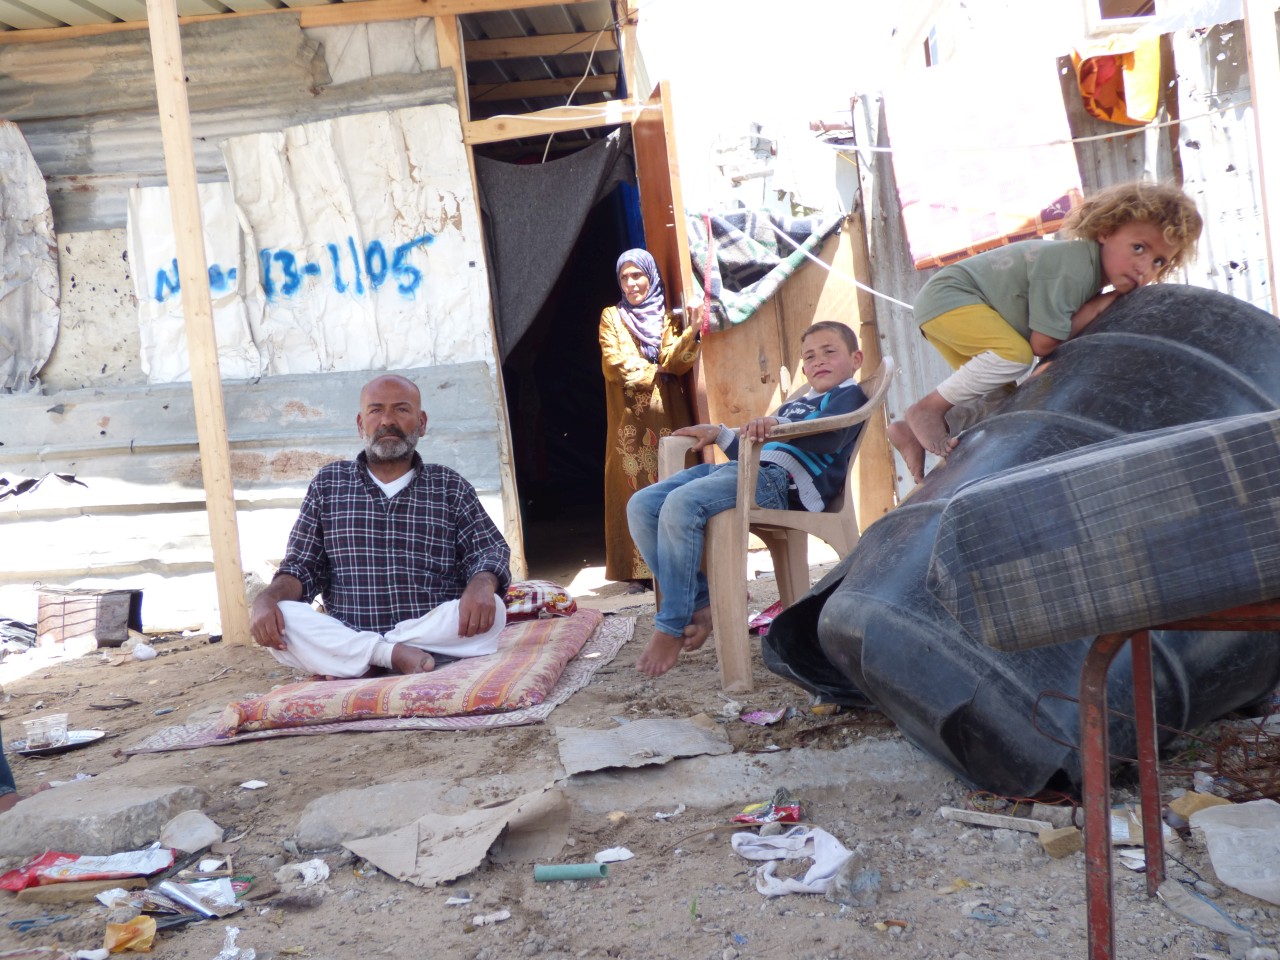 أبو محمد وأسرته بجوار مأواهم المؤقت في بيت حانون، أيار/مايو 2015 © - تصوير مكتب الأمم المتحدة لتنسيق الشؤون الإنسانية